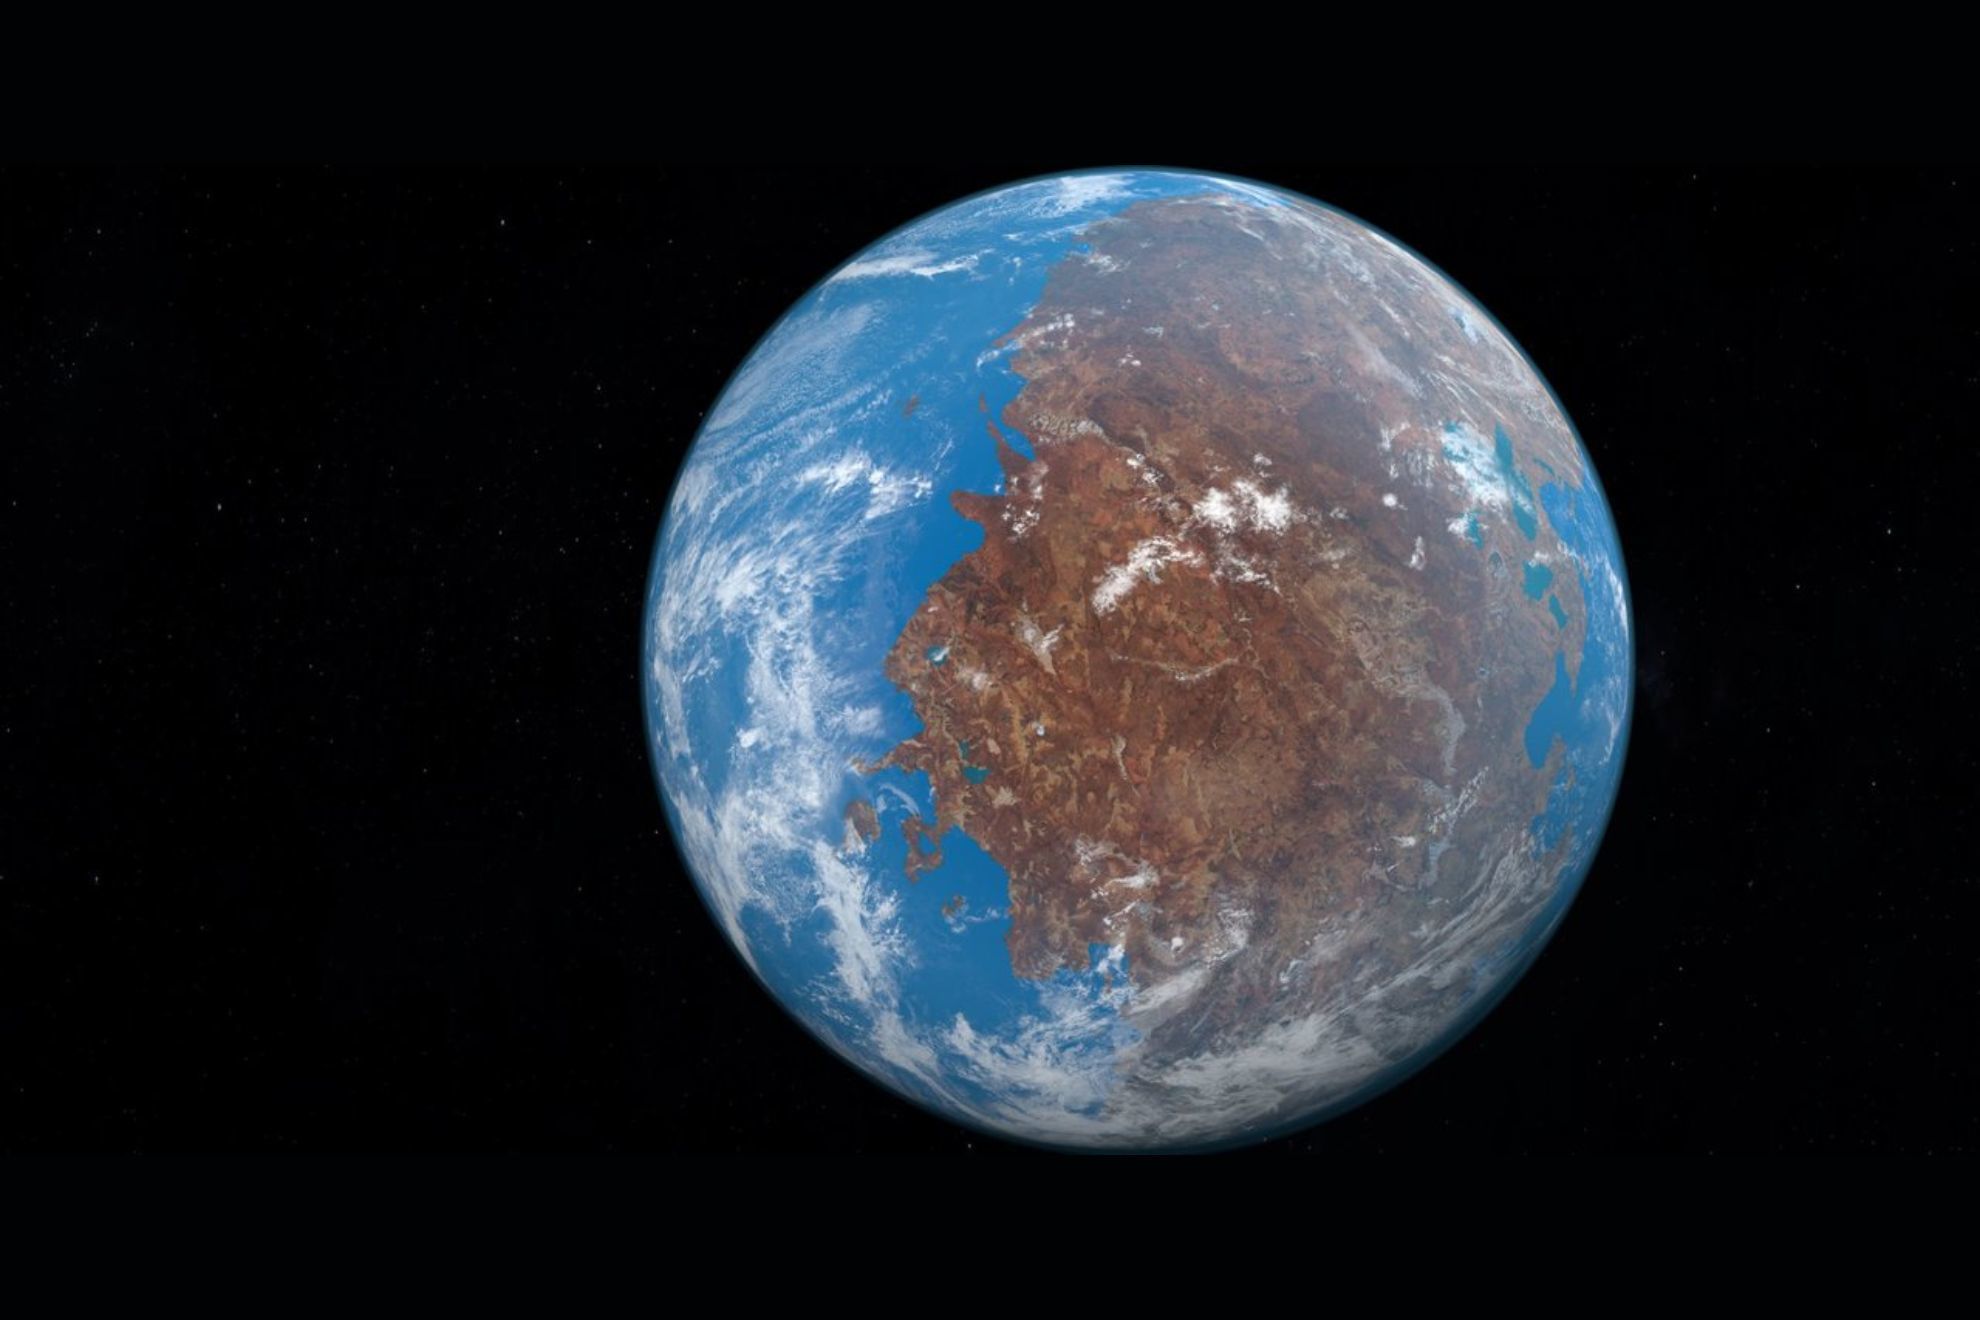 La Tierra va camino de formar un nuevo supercontinente como Pangea